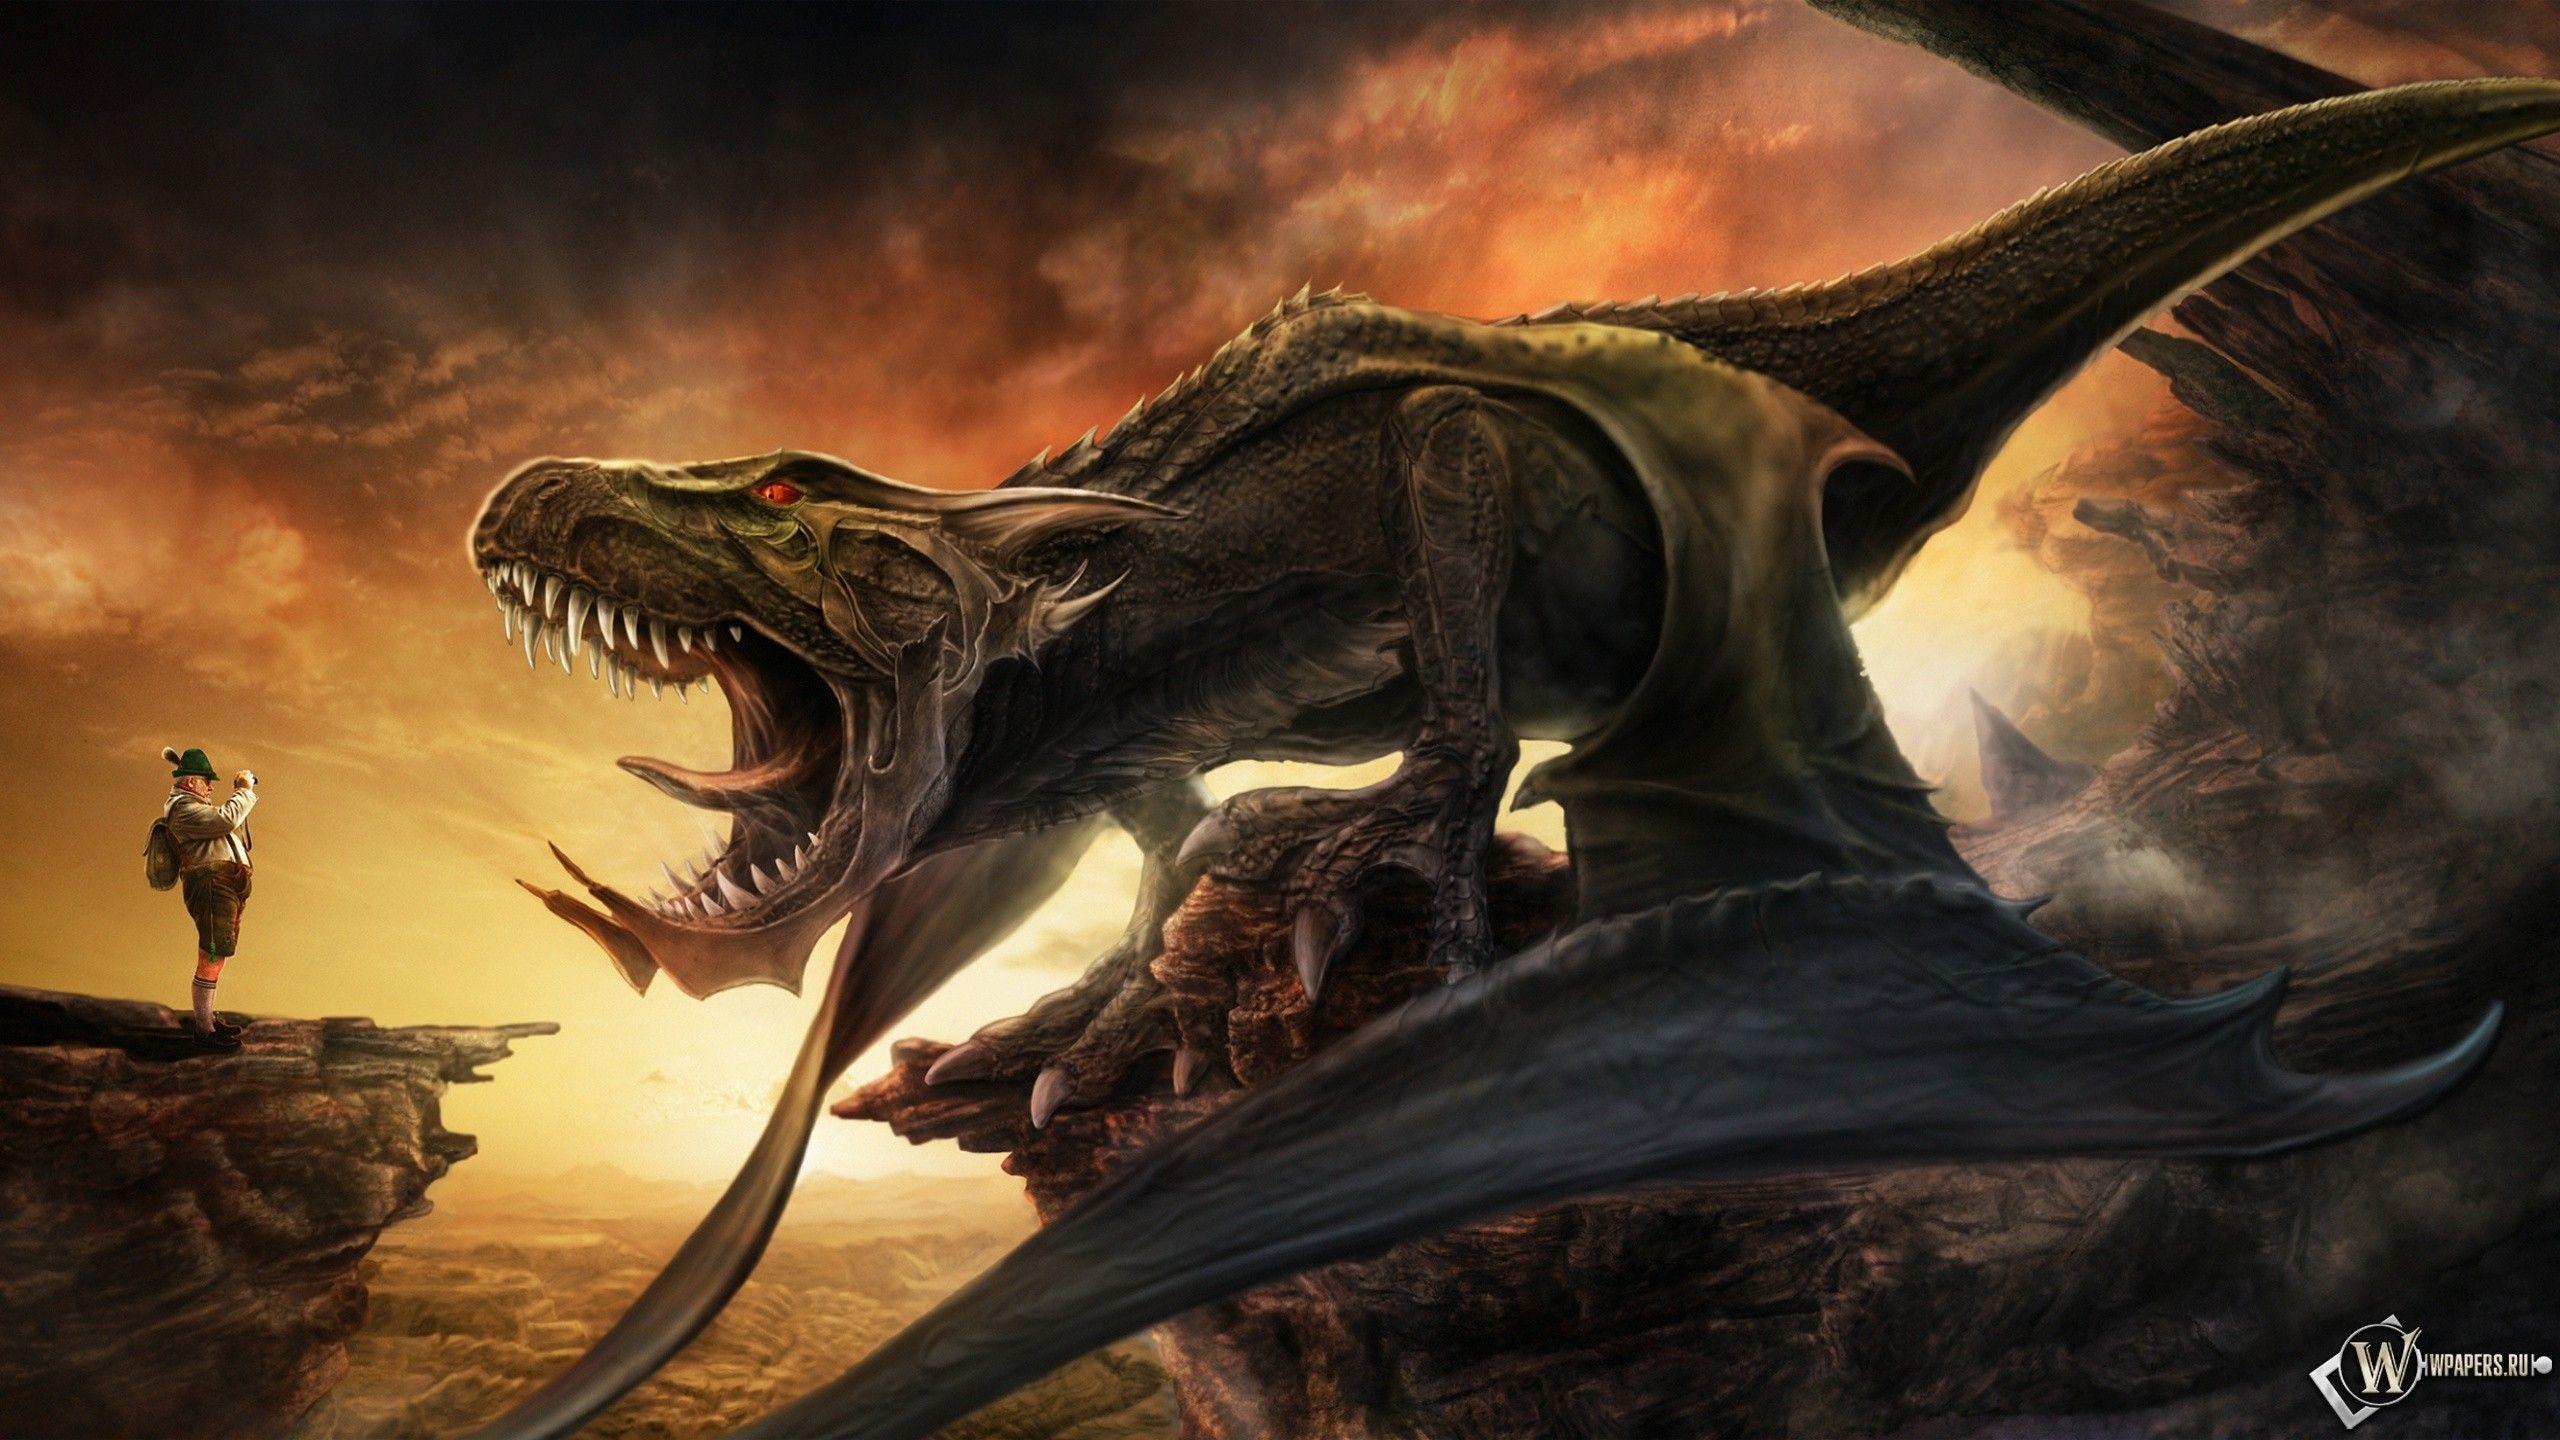 Download Dragons Tourism Wallpaper Wallpoper 2560x1440PX Eragon